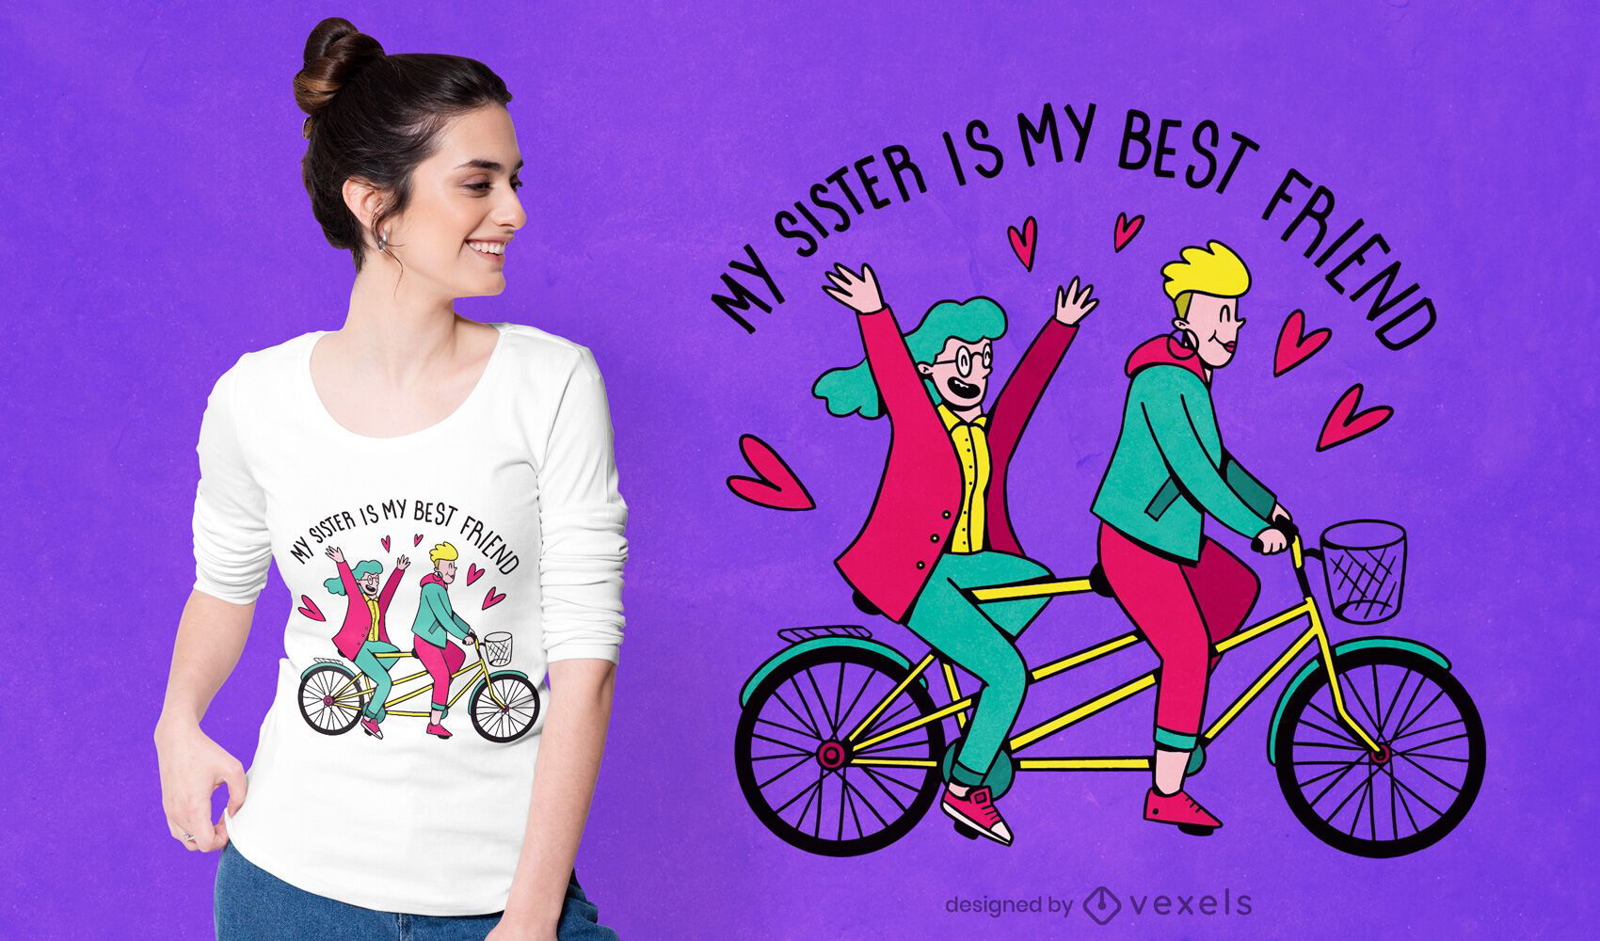 Sister best friend t-shirt design